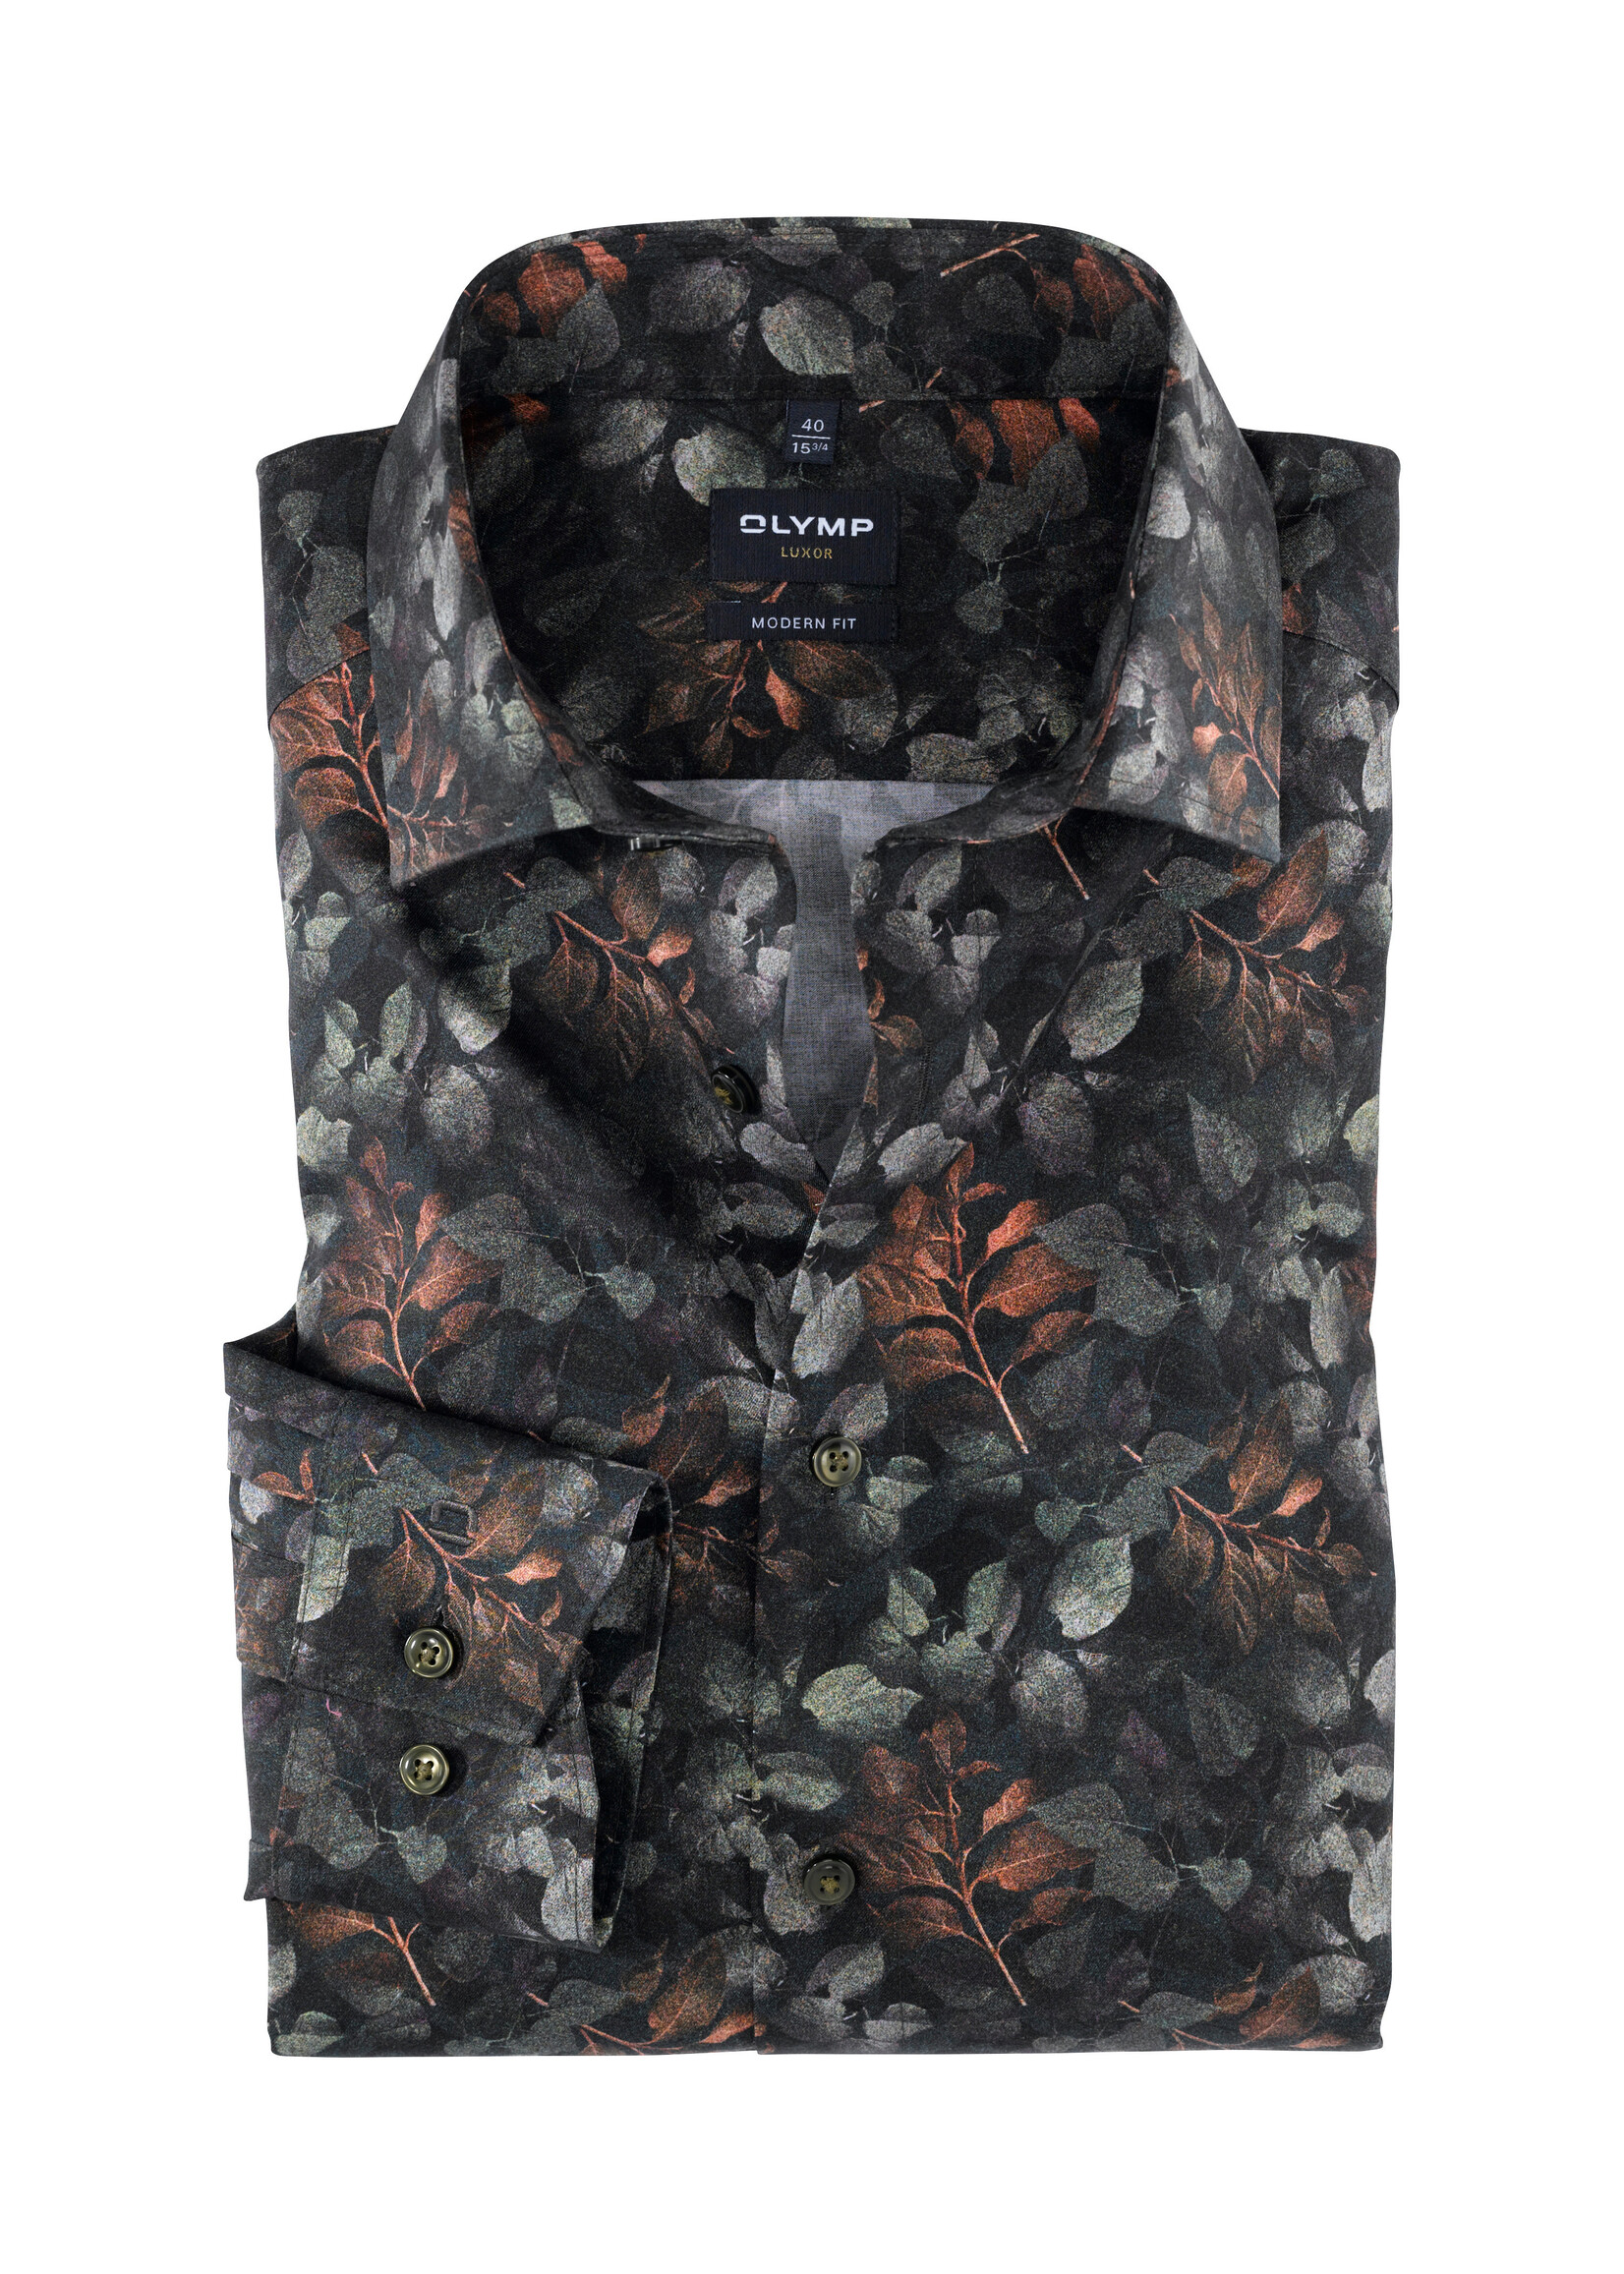 Olymp Olymp - Modern Fit hemd met bloemenprint - Lindegroen